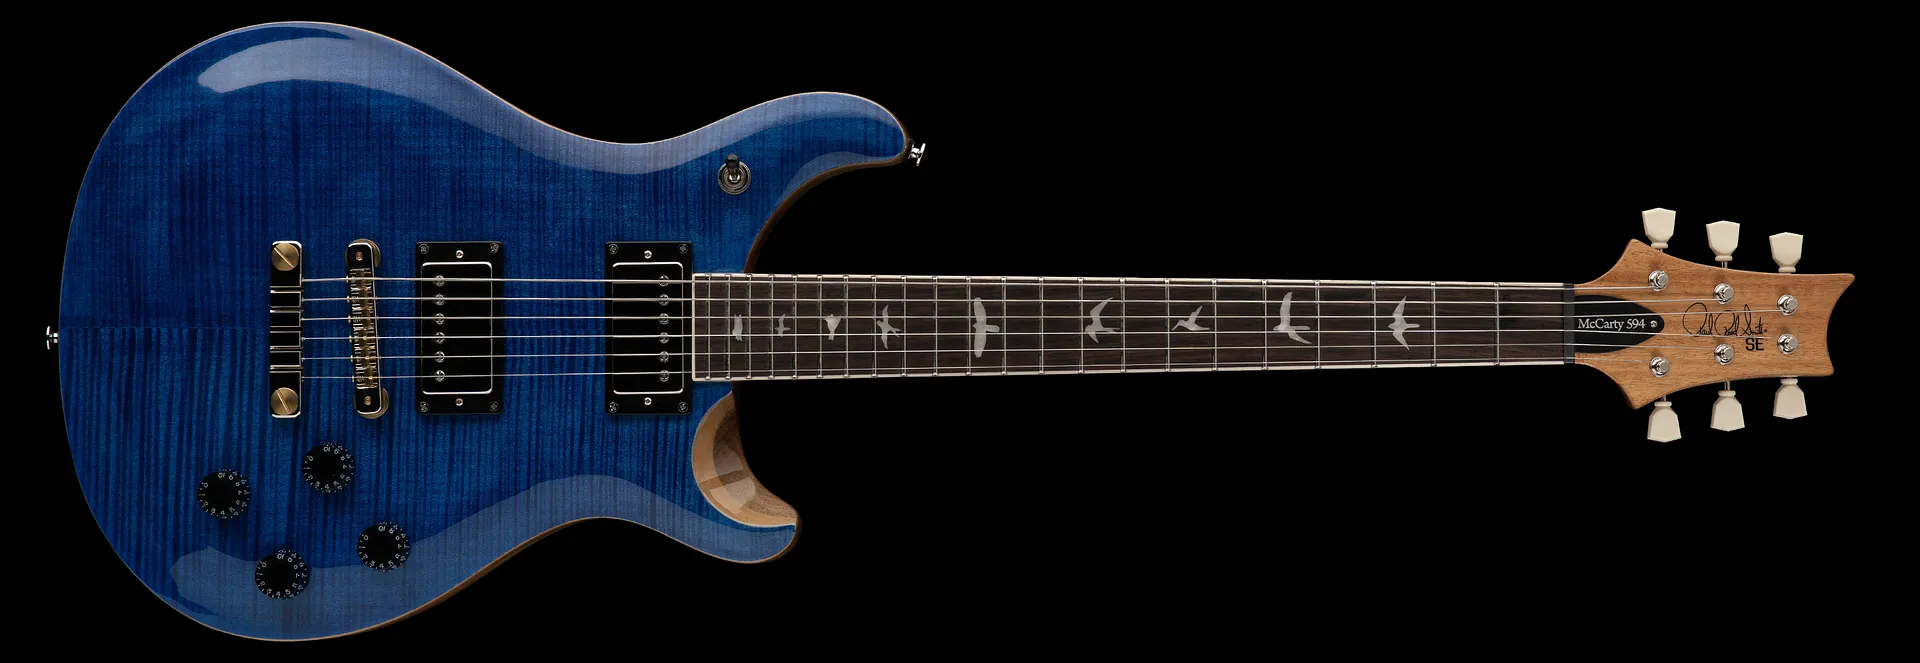 Prs Se Mccarty 594 2h Ht Rw - Faded Blue - Guitarra eléctrica de doble corte - Variation 2